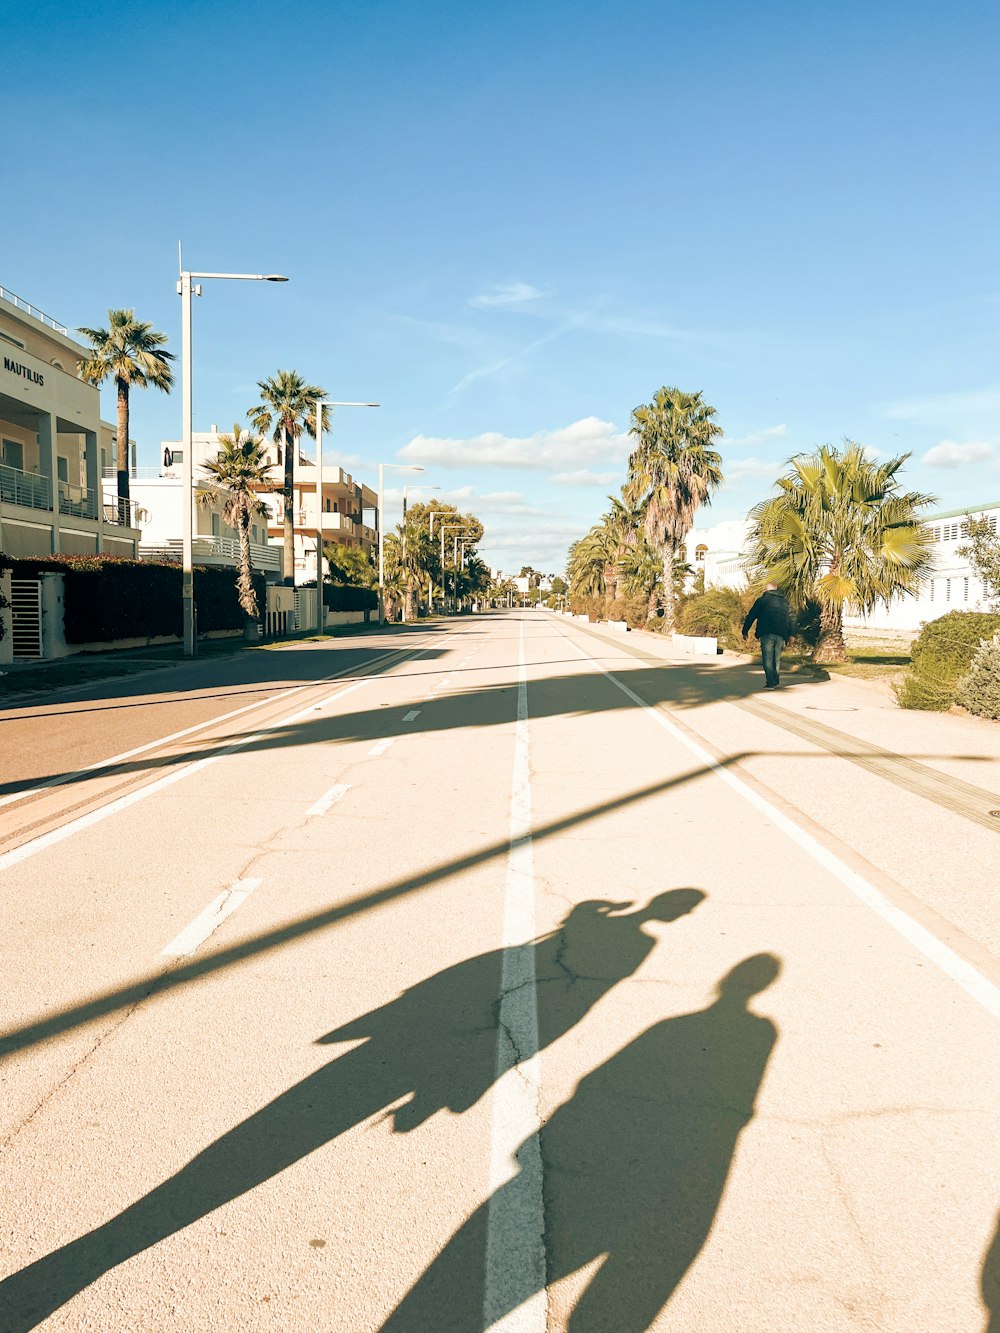 Un homme faisant du skateboard dans une rue à côté de palmiers